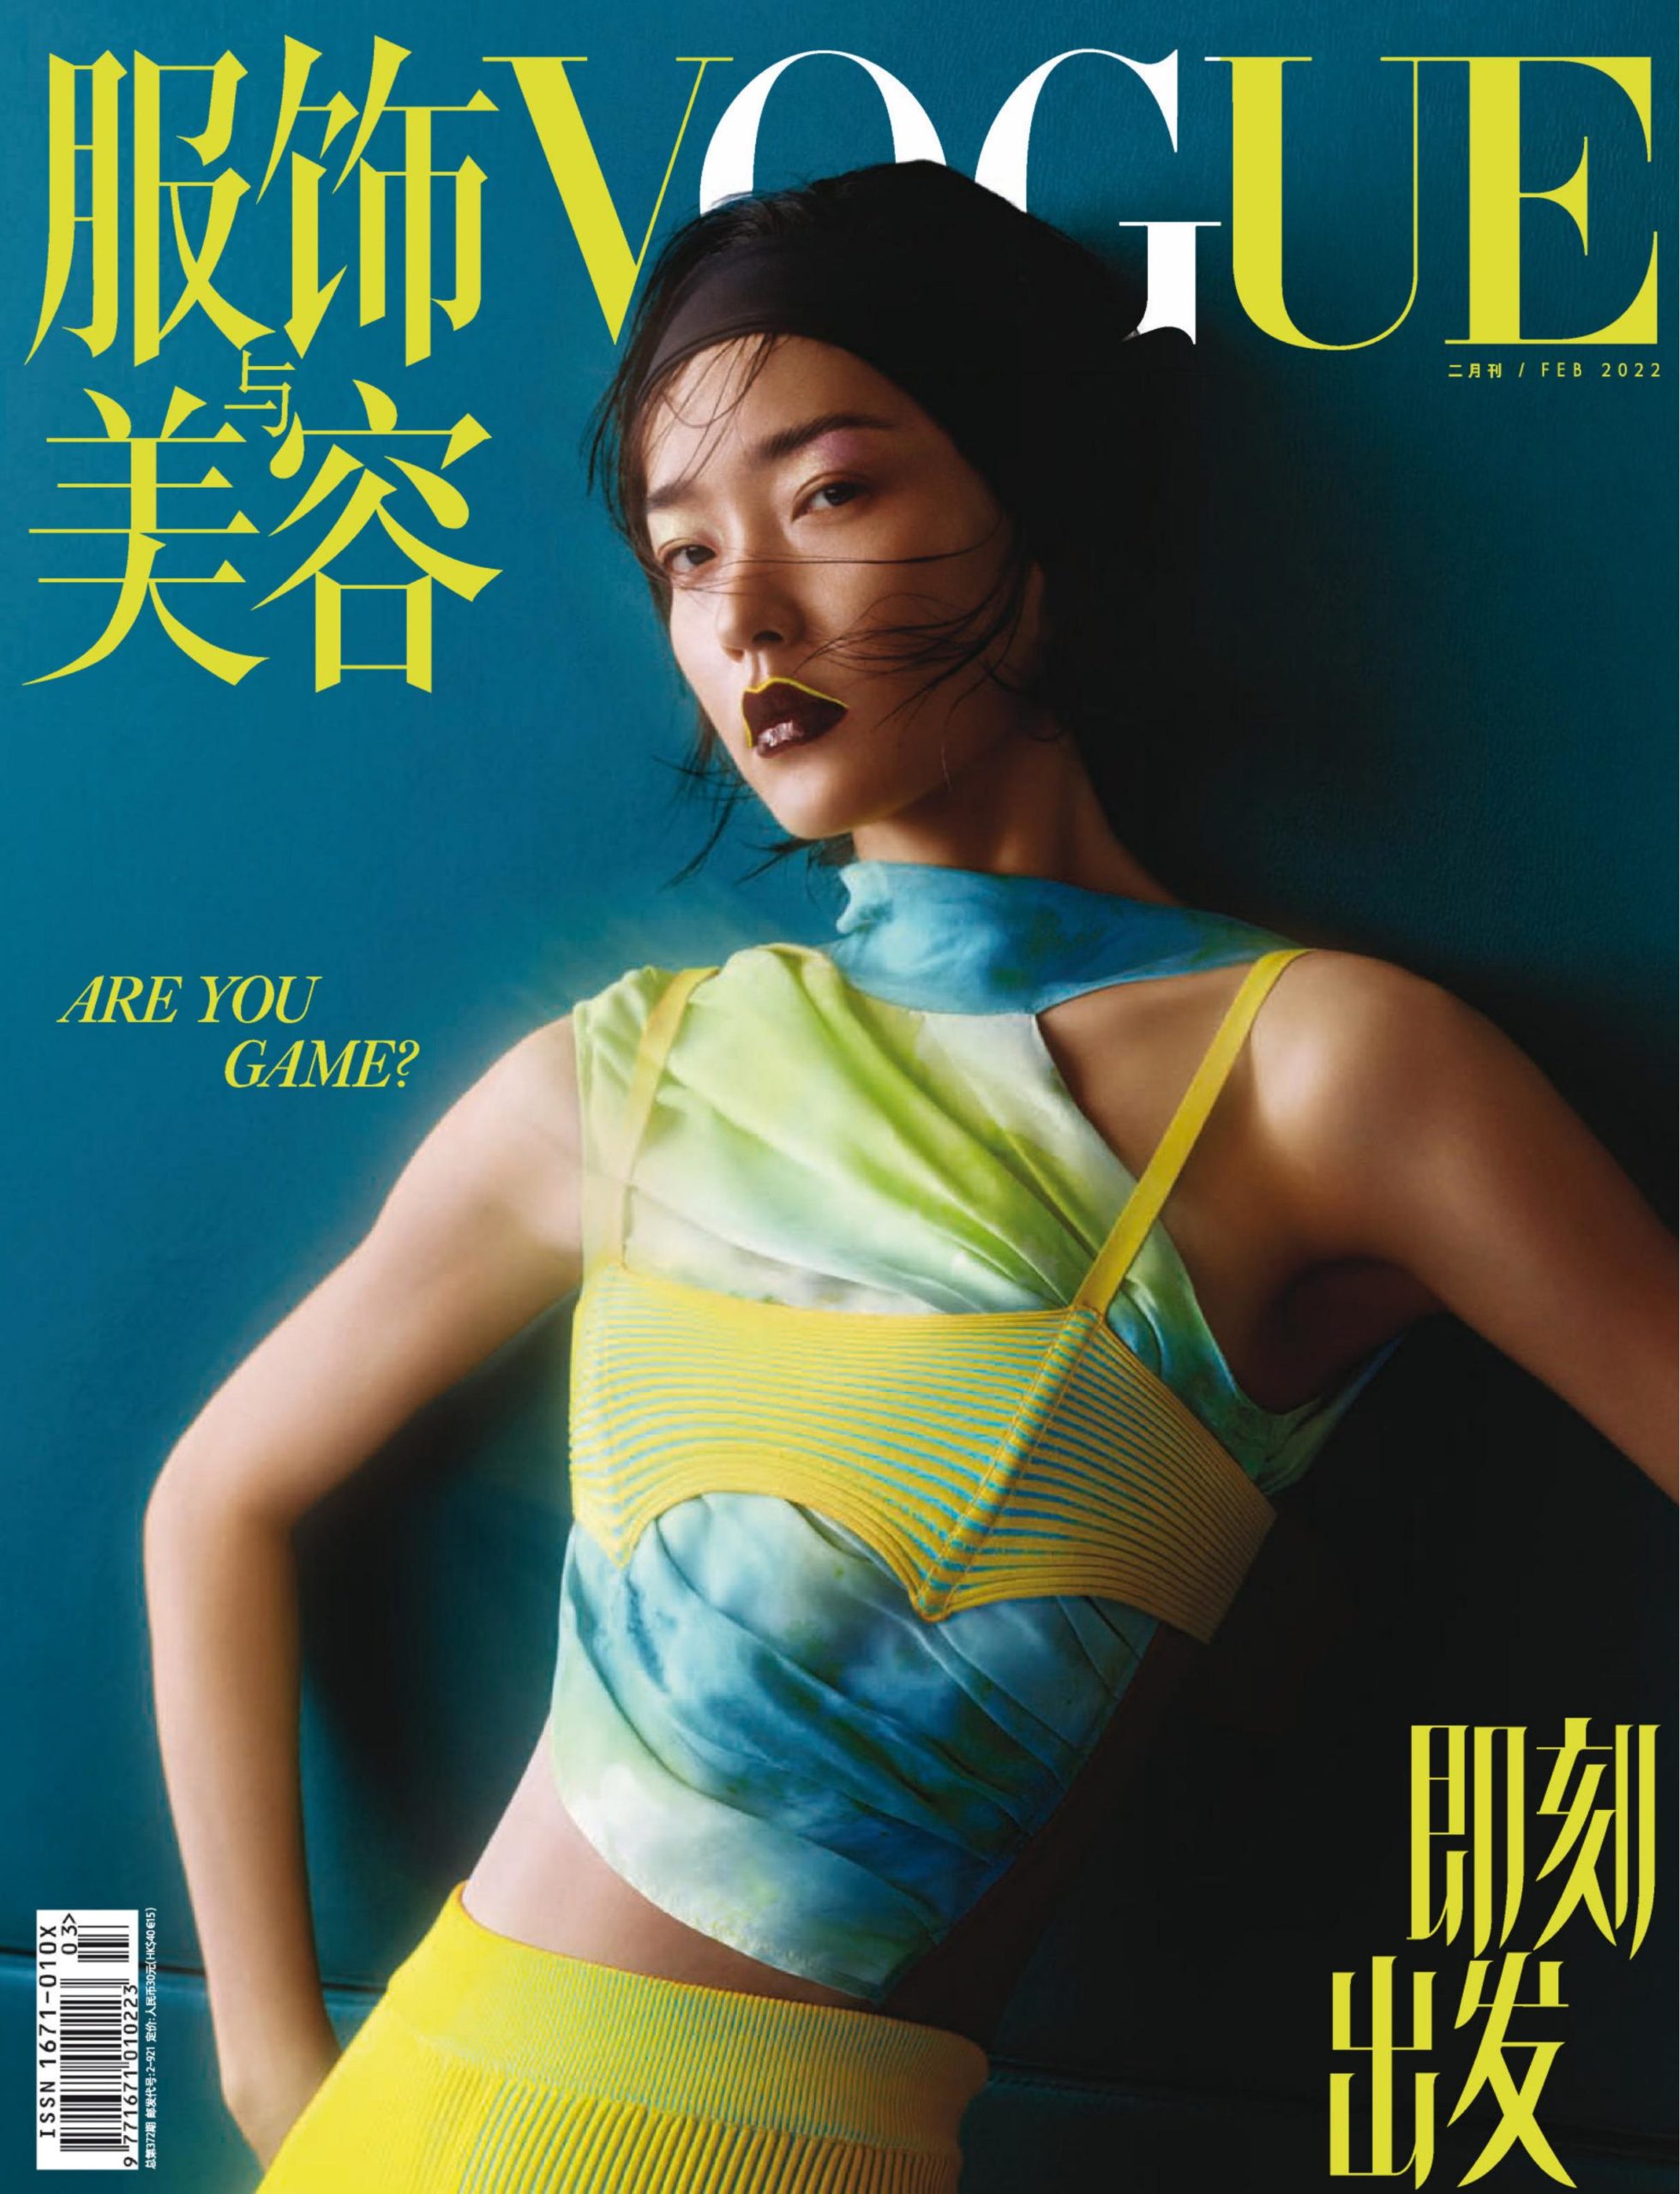 中文简体《Vogue服饰与美容》时尚杂志订阅PDF高清【2022全年订阅】